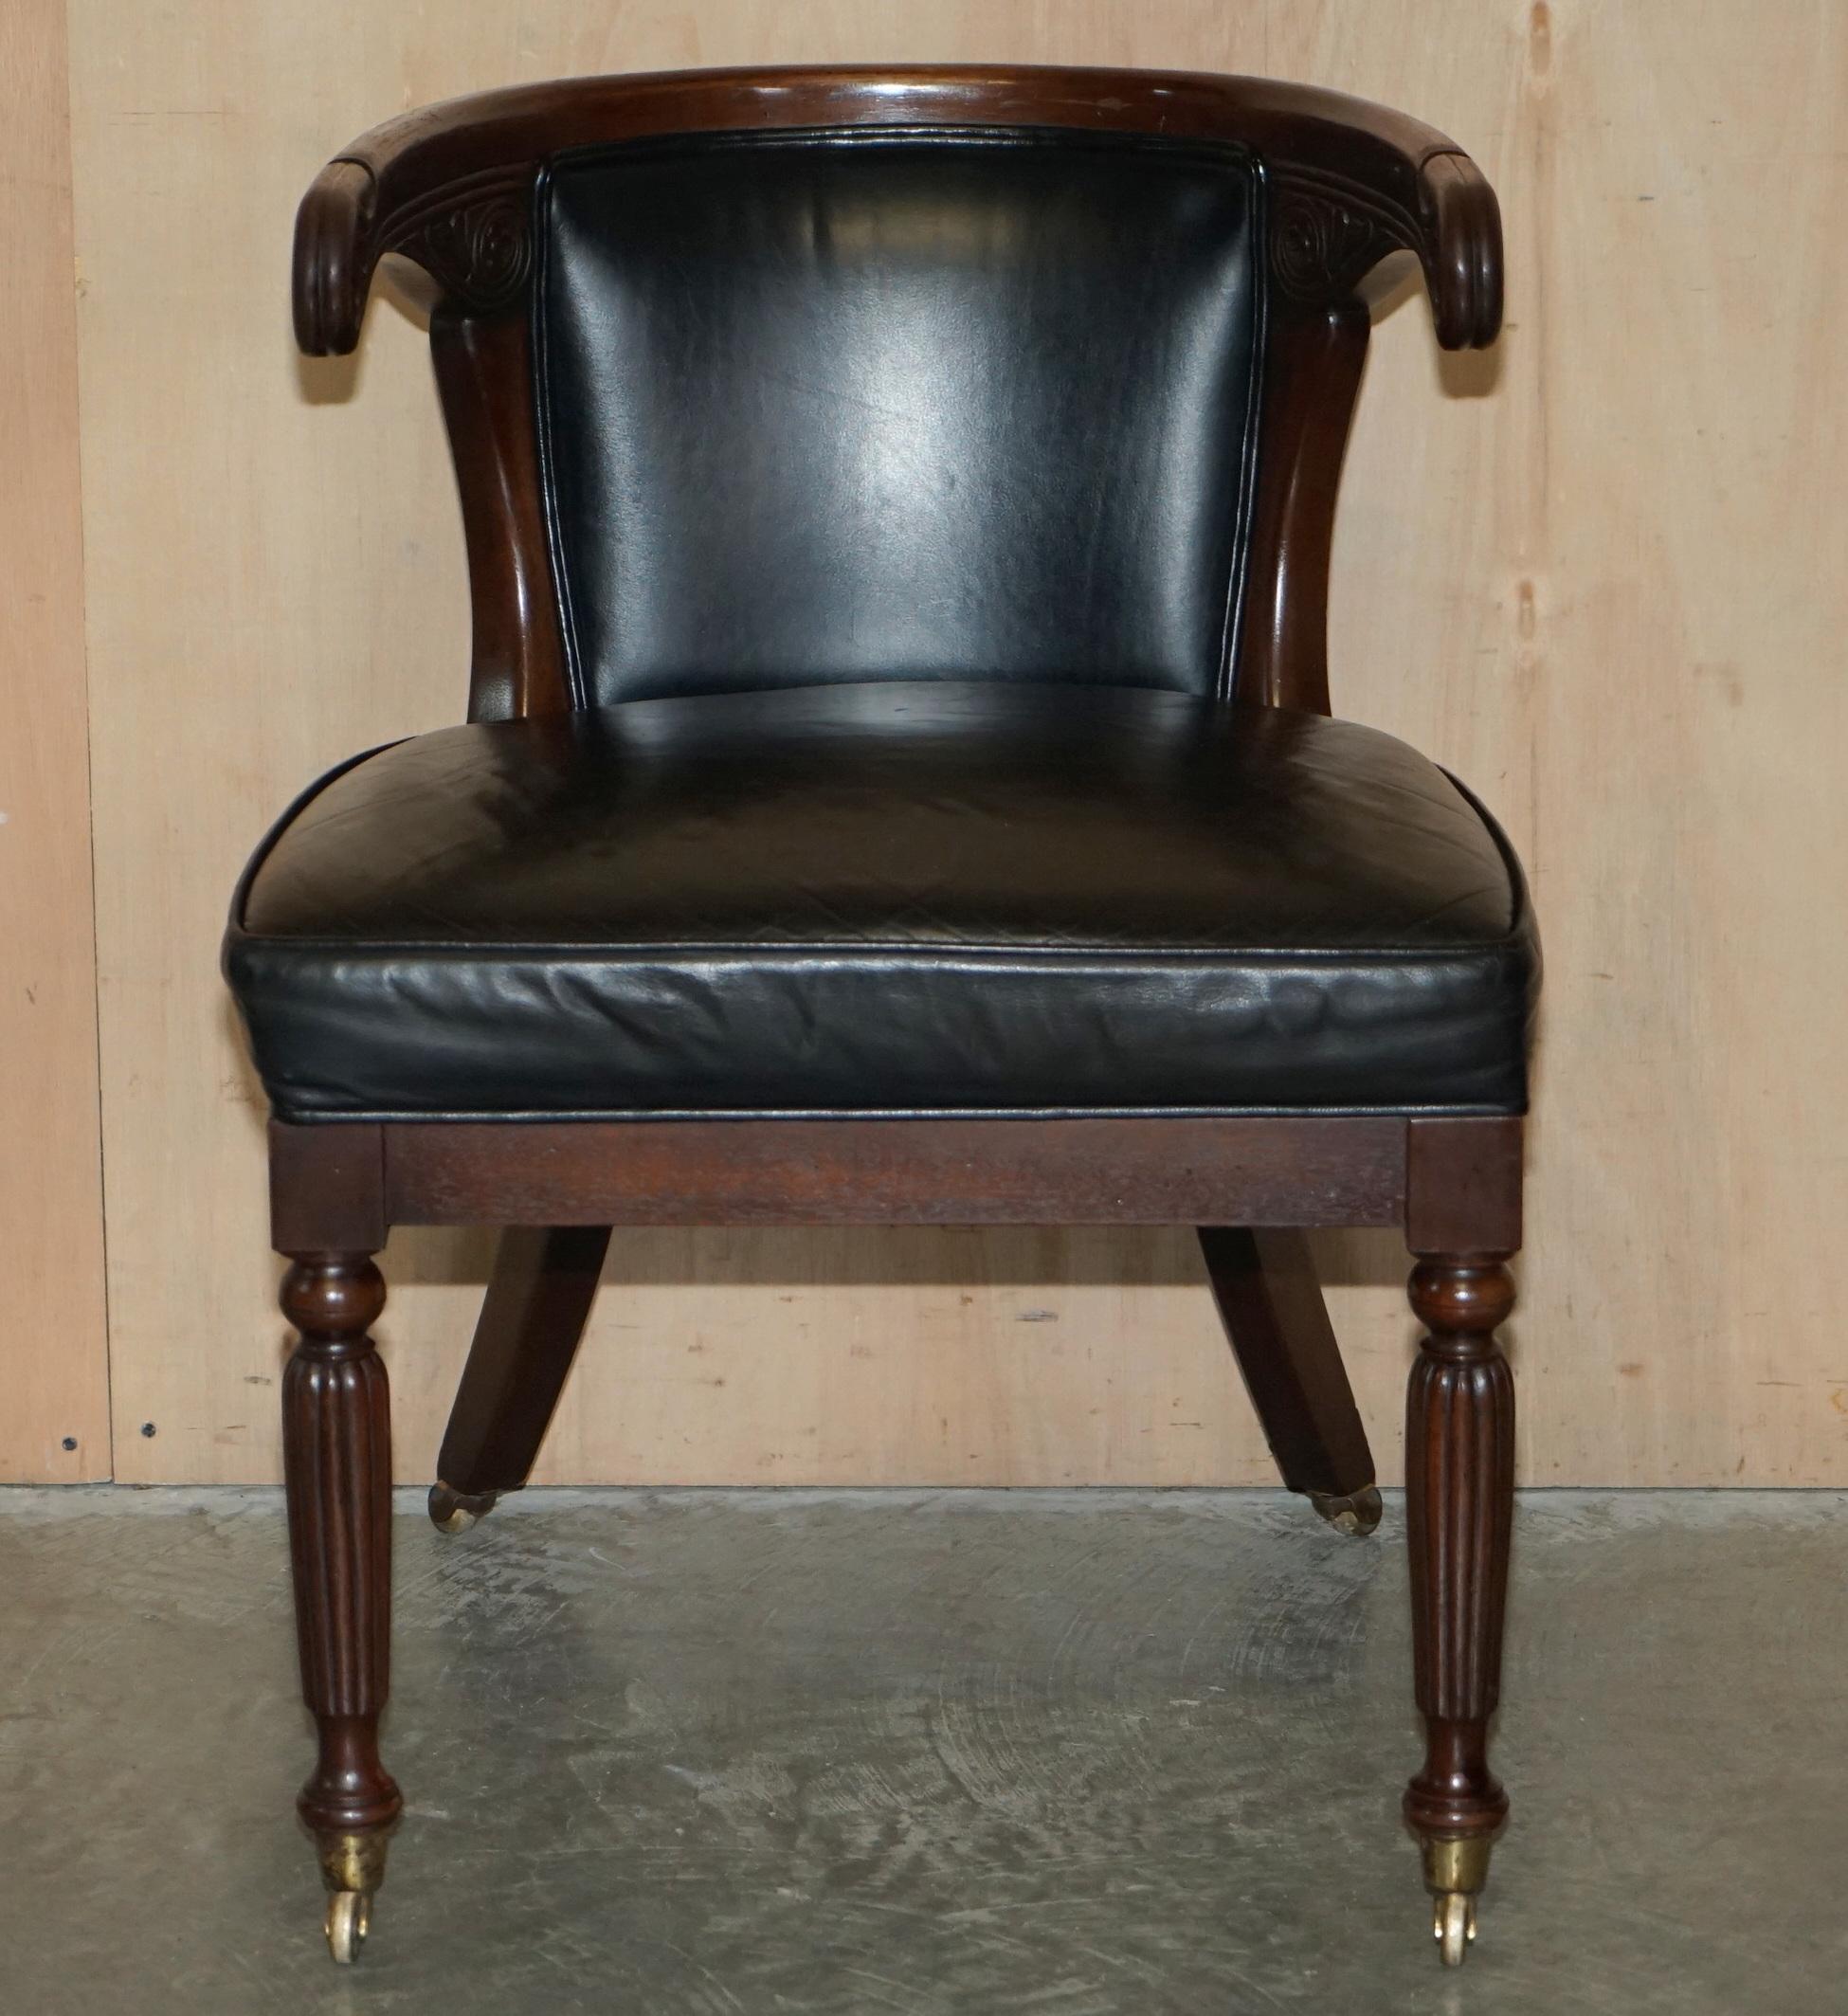 Royal House Antiques

Royal House Antiques a le plaisir d'offrir à la vente cette exquise chaise de bureau Regency originale circa 1815 en cuir noir avec un cadre sculpté en fer à cheval.

Veuillez noter que les frais de livraison indiqués ne sont